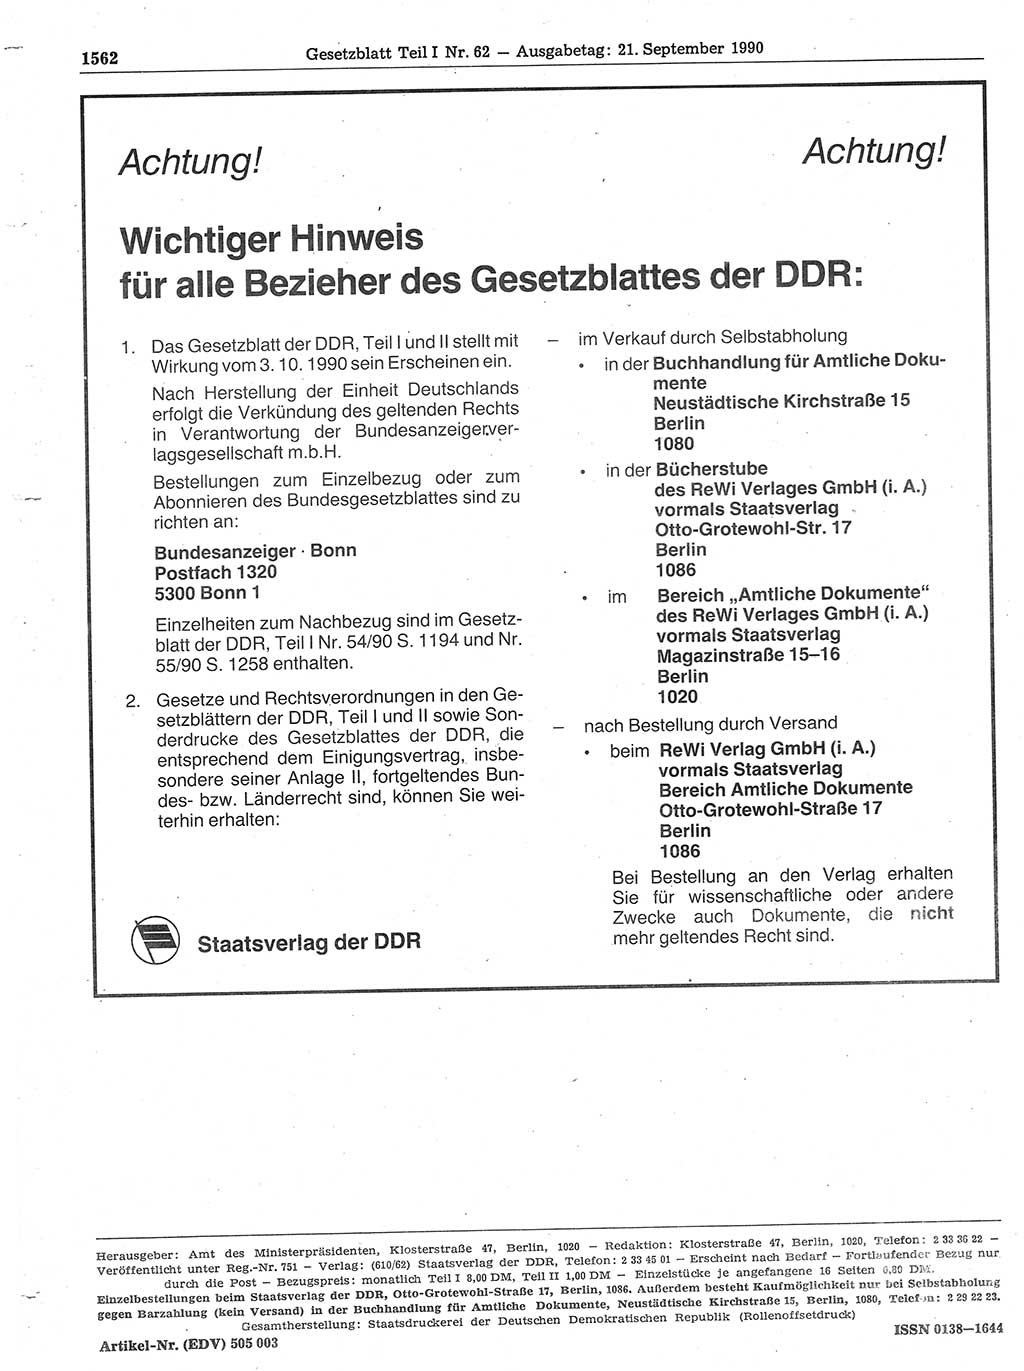 Gesetzblatt (GBl.) der Deutschen Demokratischen Republik (DDR) Teil Ⅰ 1990, Seite 1562 (GBl. DDR Ⅰ 1990, S. 1562)